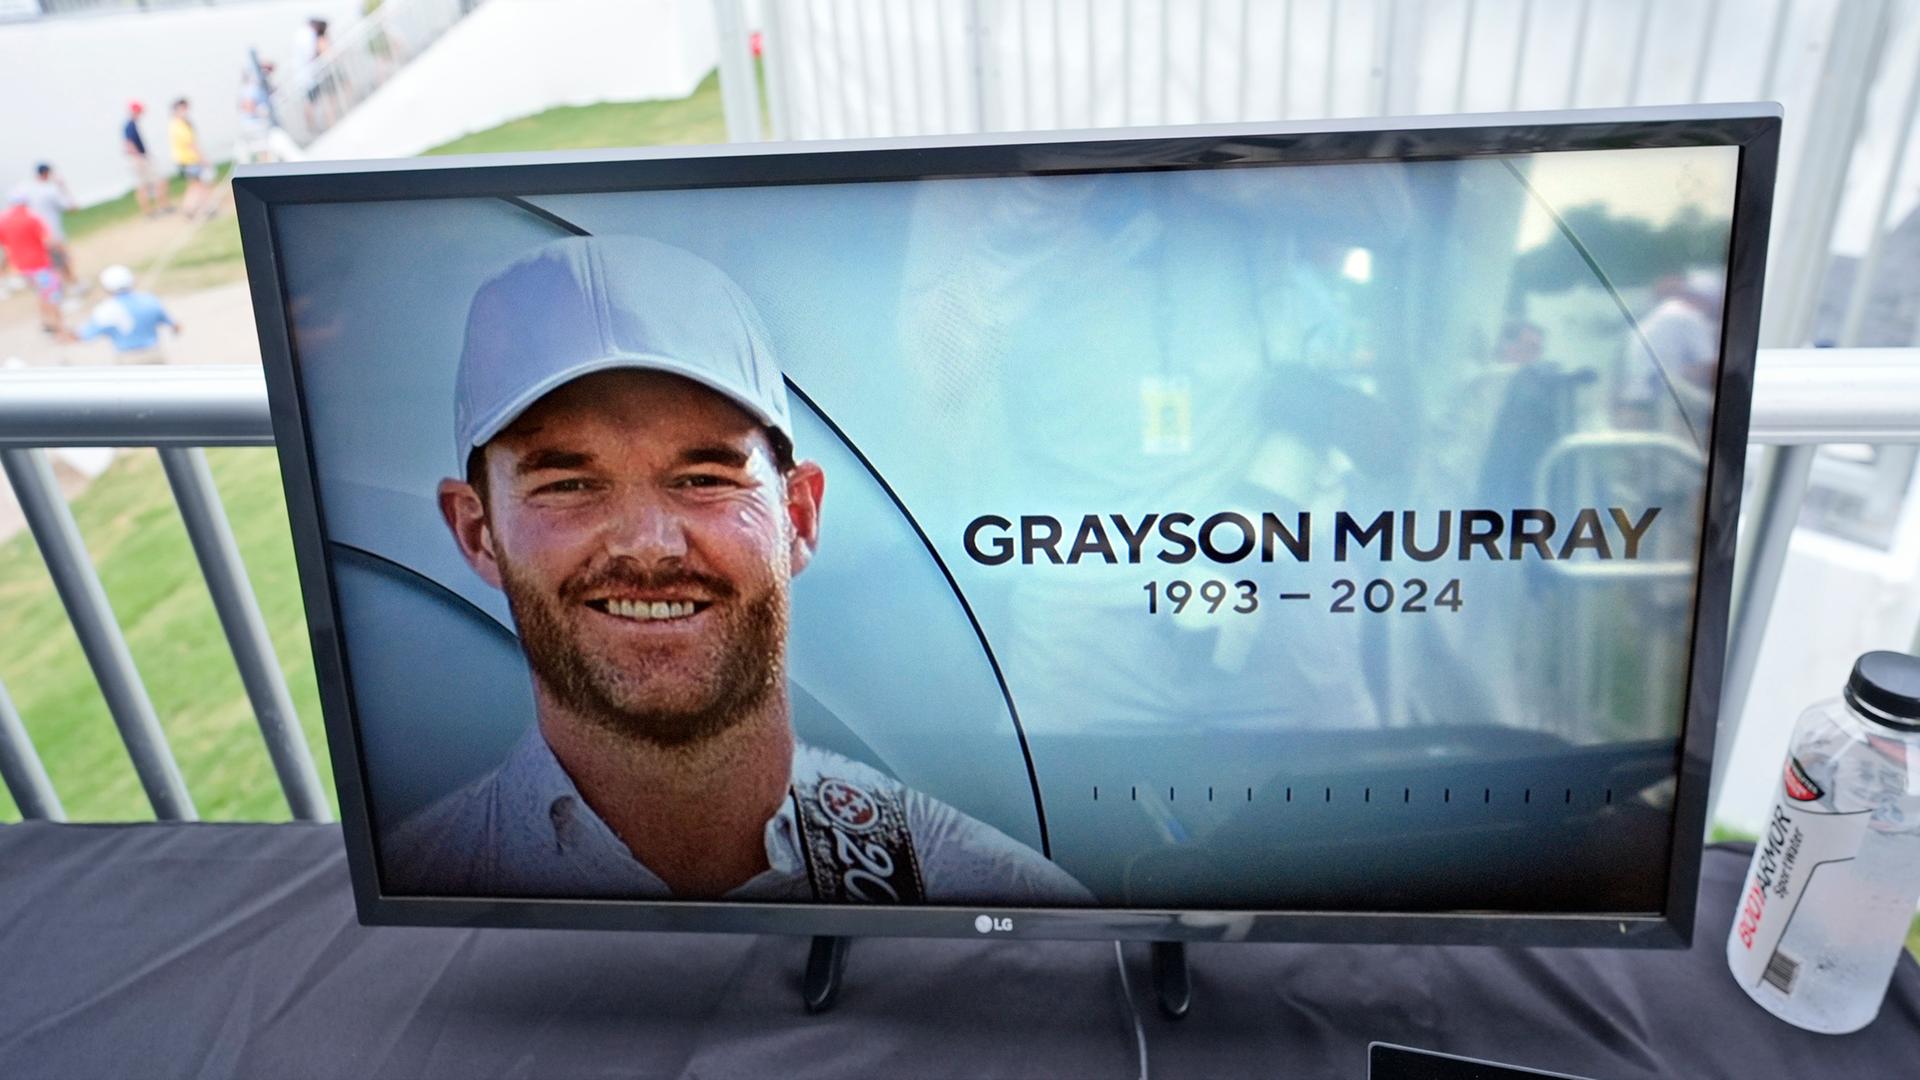 Auf einem Bildschirm am Rande eines Golfturniers wird ein Foto des verstorbenen Grayson Murray mit Geburts- und Todeshjahr gezeigt.